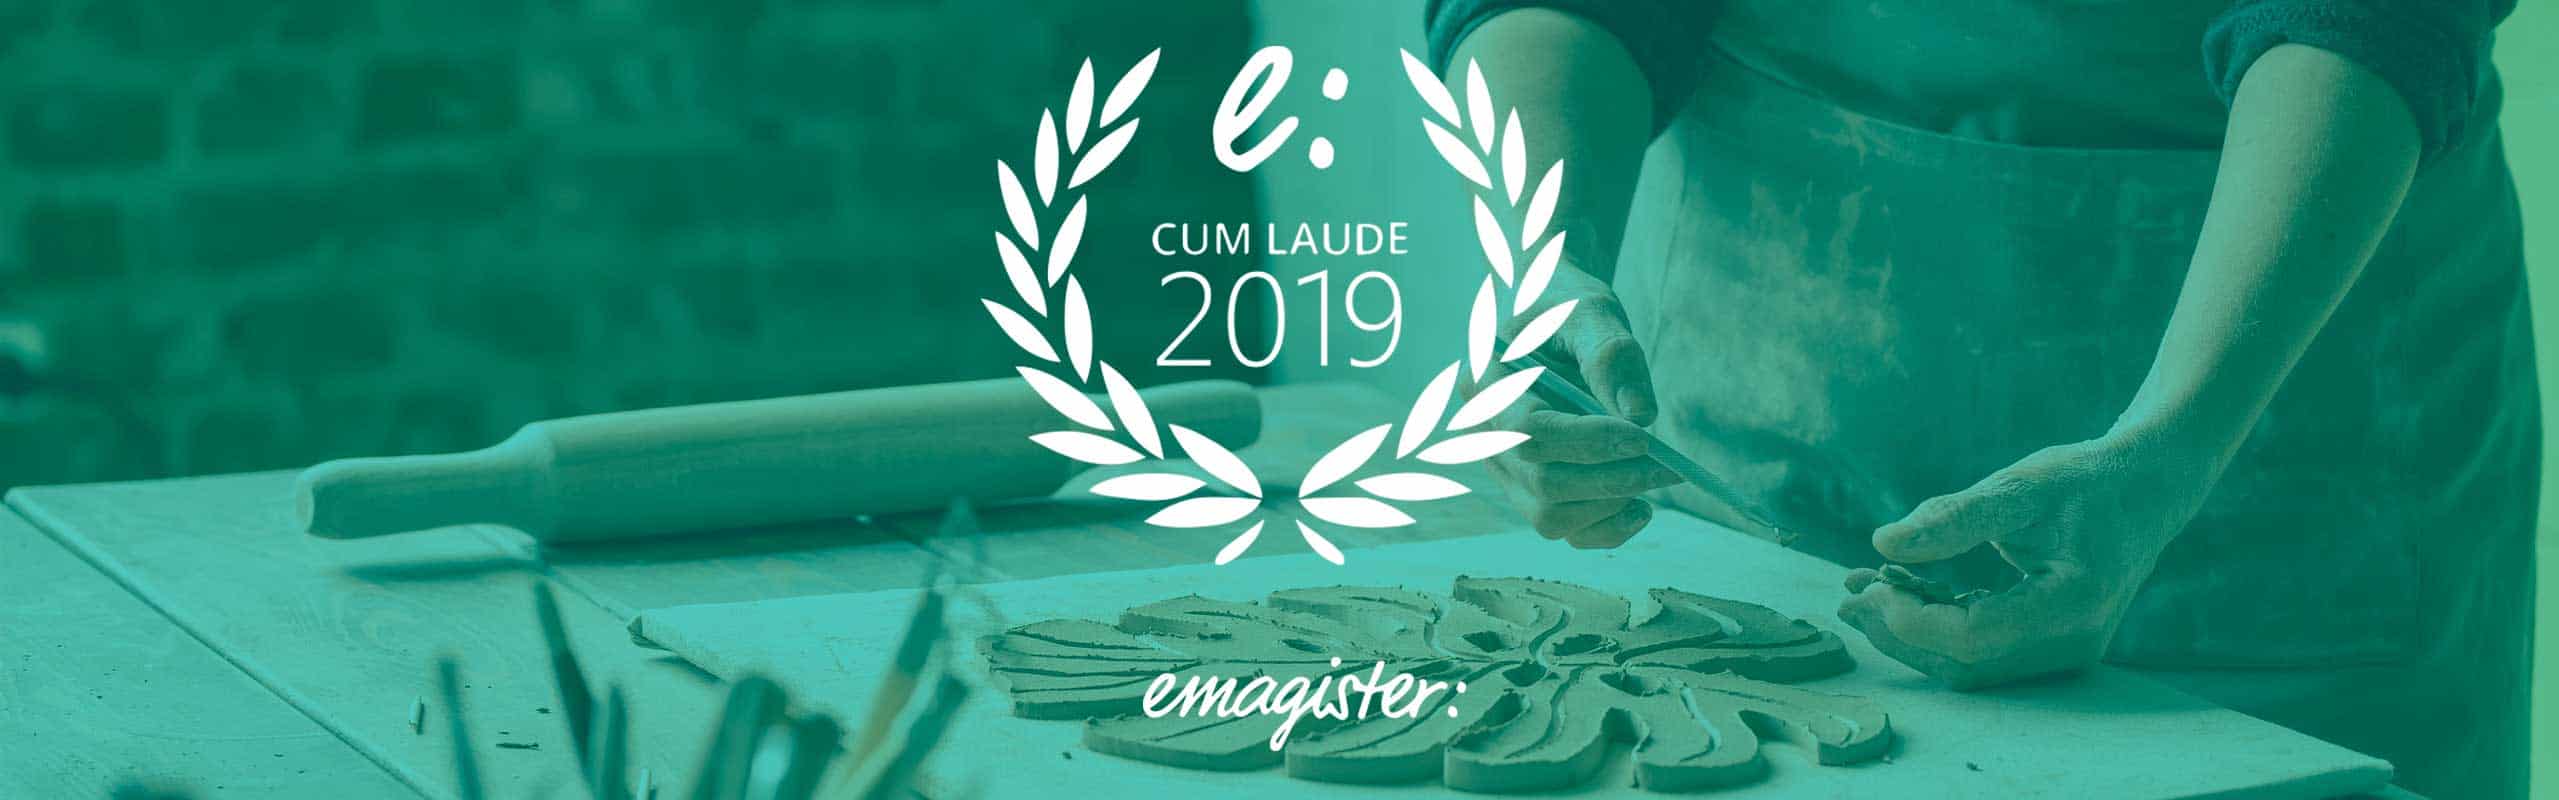 Nos han premiado con el sello cum laude 2019